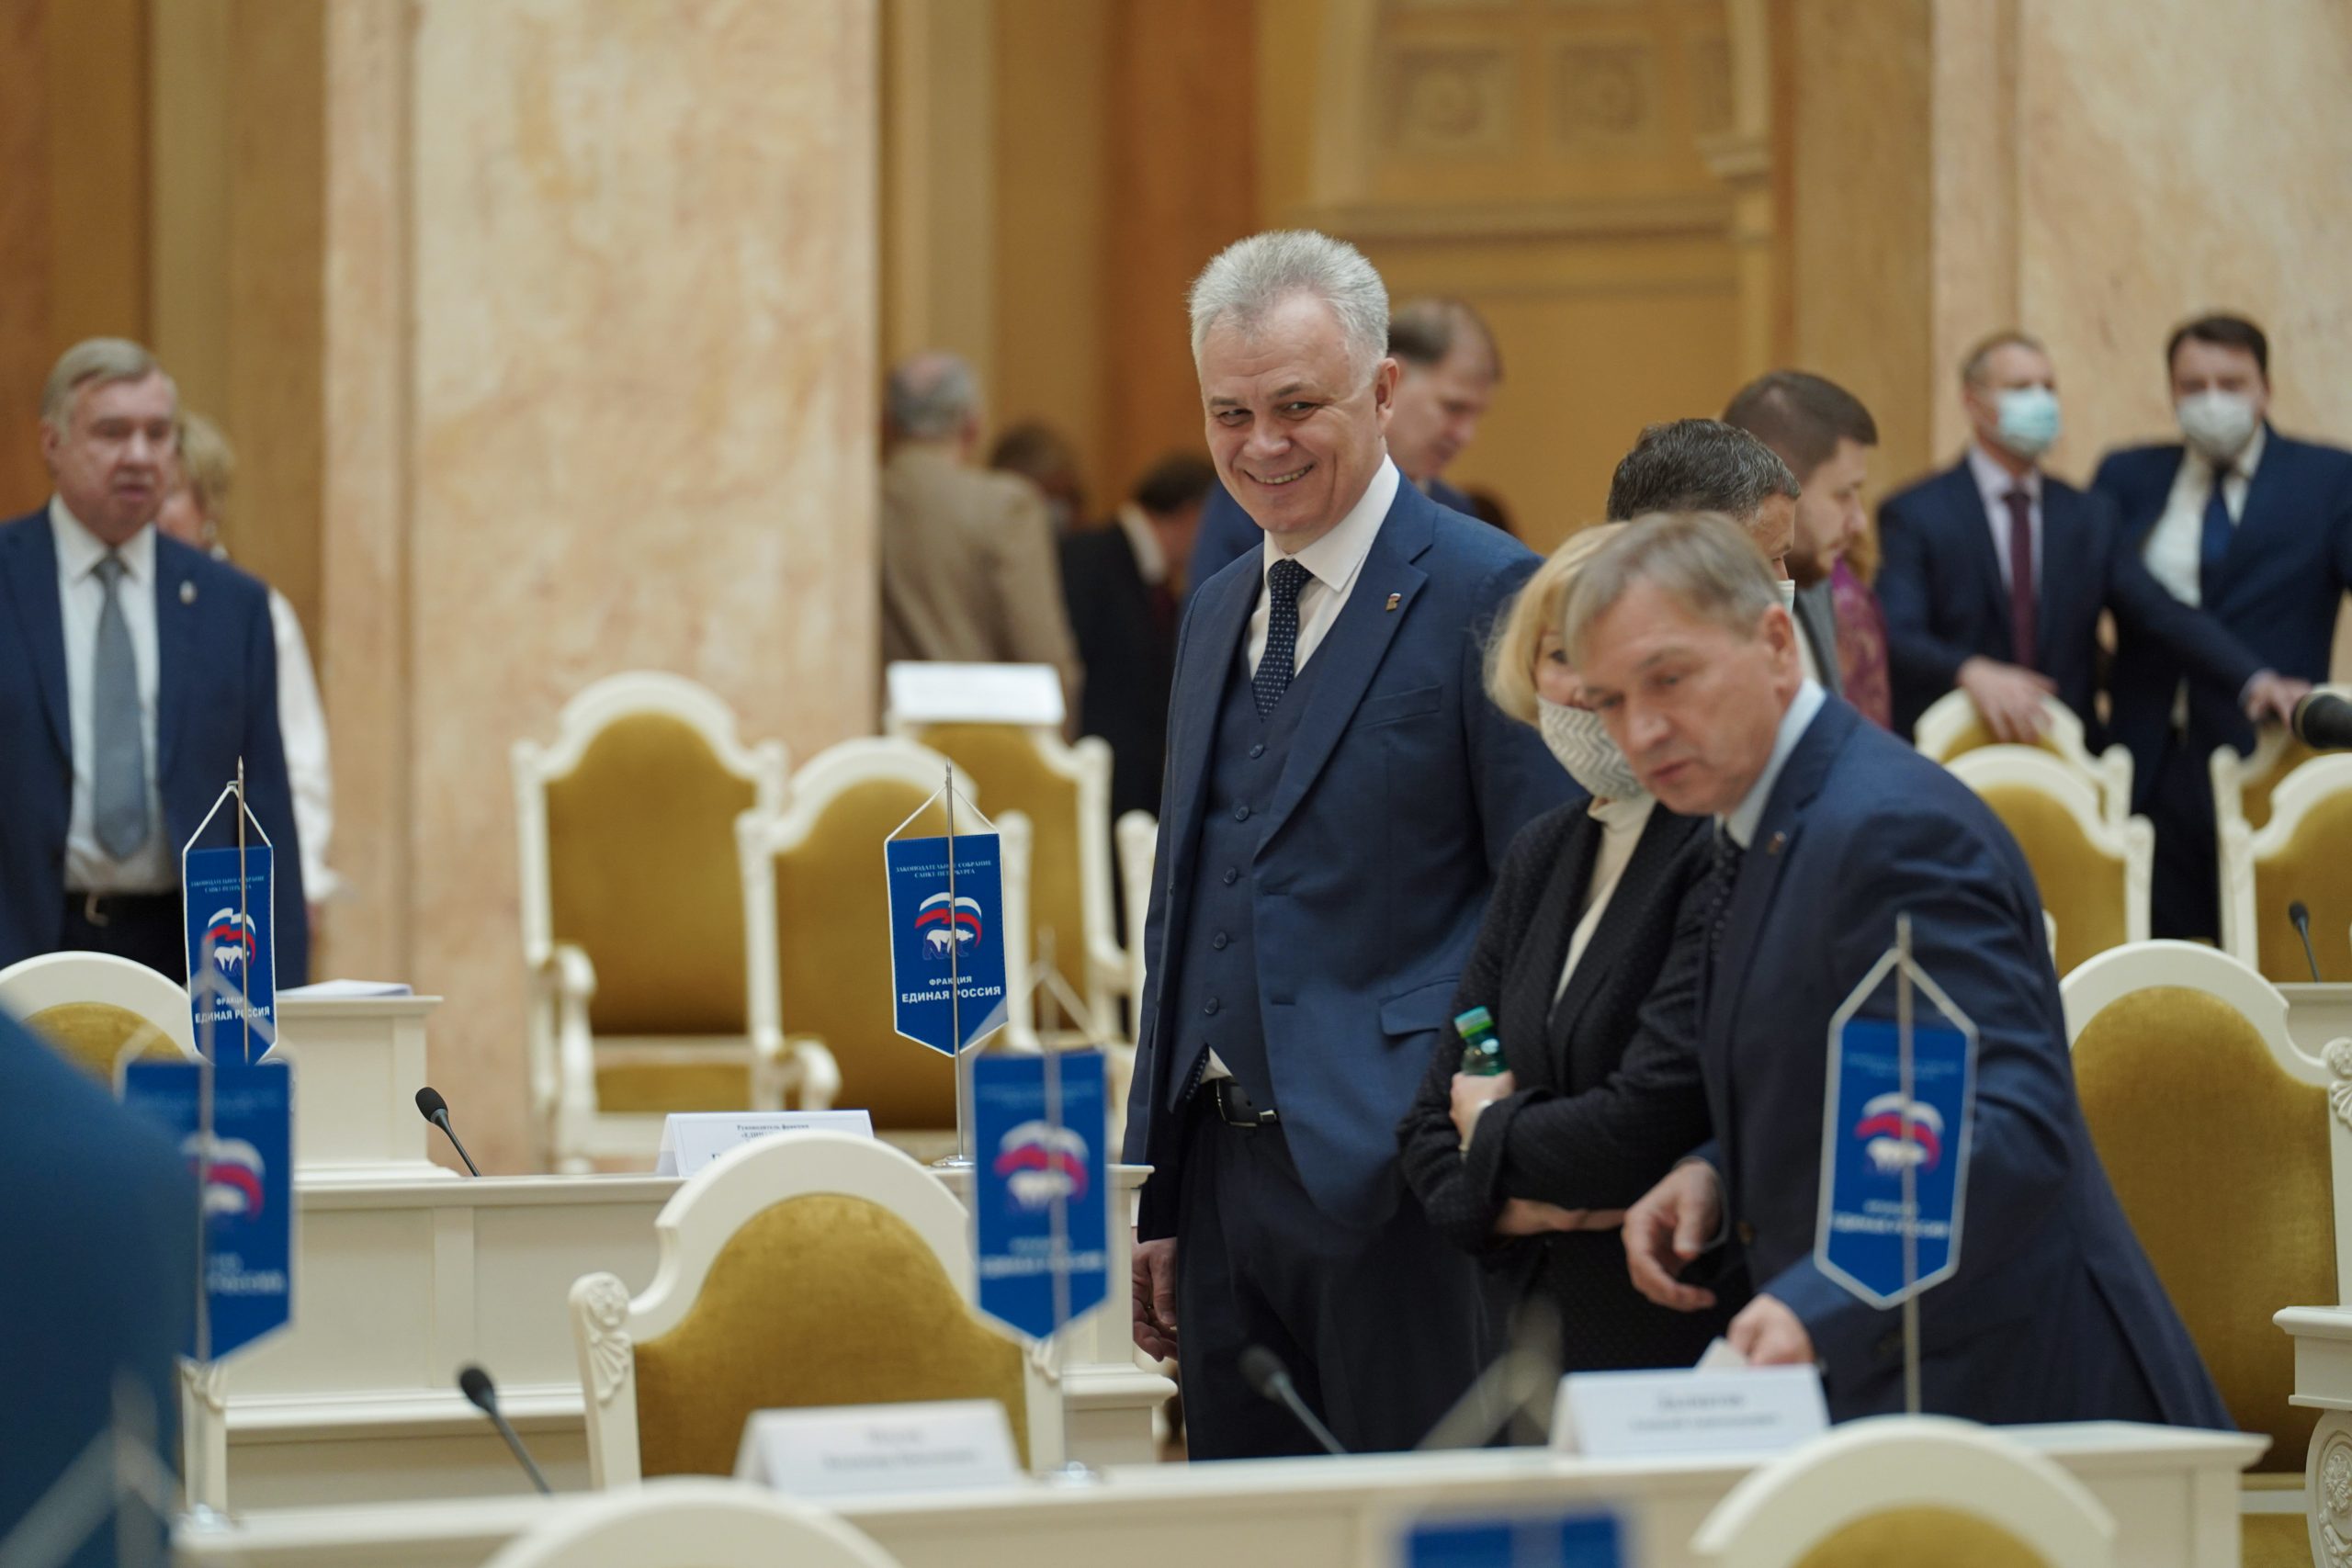 13 октября состоялось очередное заседание Законодательного Собрания Санкт-Петербурга